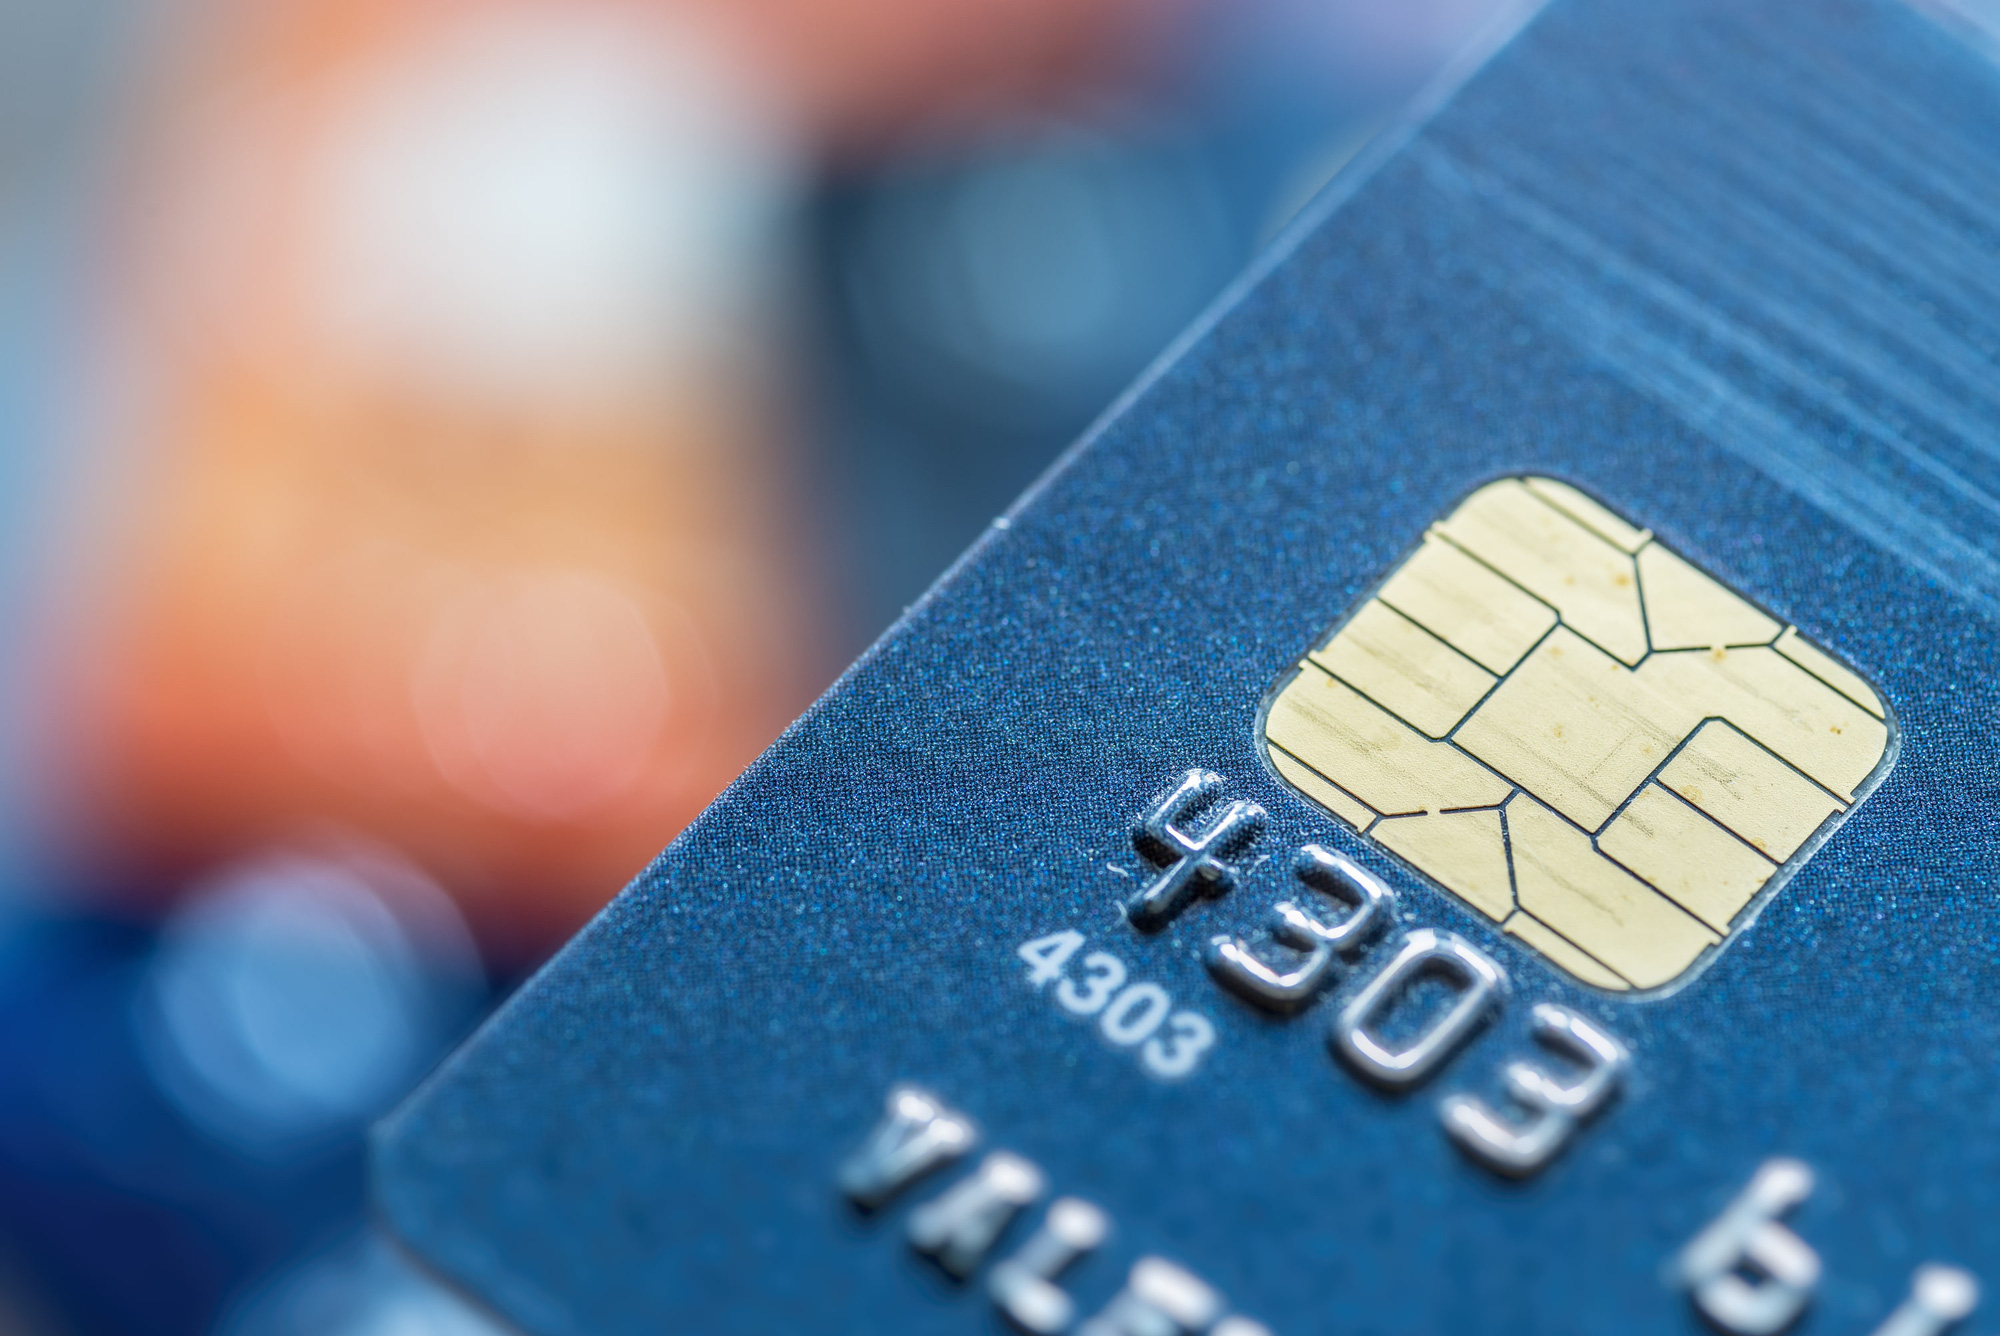 Sử dụng thẻ ATM gắn chip để rút tiền mặt là một trải nghiệm an toàn và tiện lợi hơn cho khách hàng. Nếu bạn chưa biết cách sử dụng thẻ ATM gắn chip, hãy xem ảnh tương ứng để tìm hiểu thêm về cách thức sử dụng thẻ này khi rút tiền.